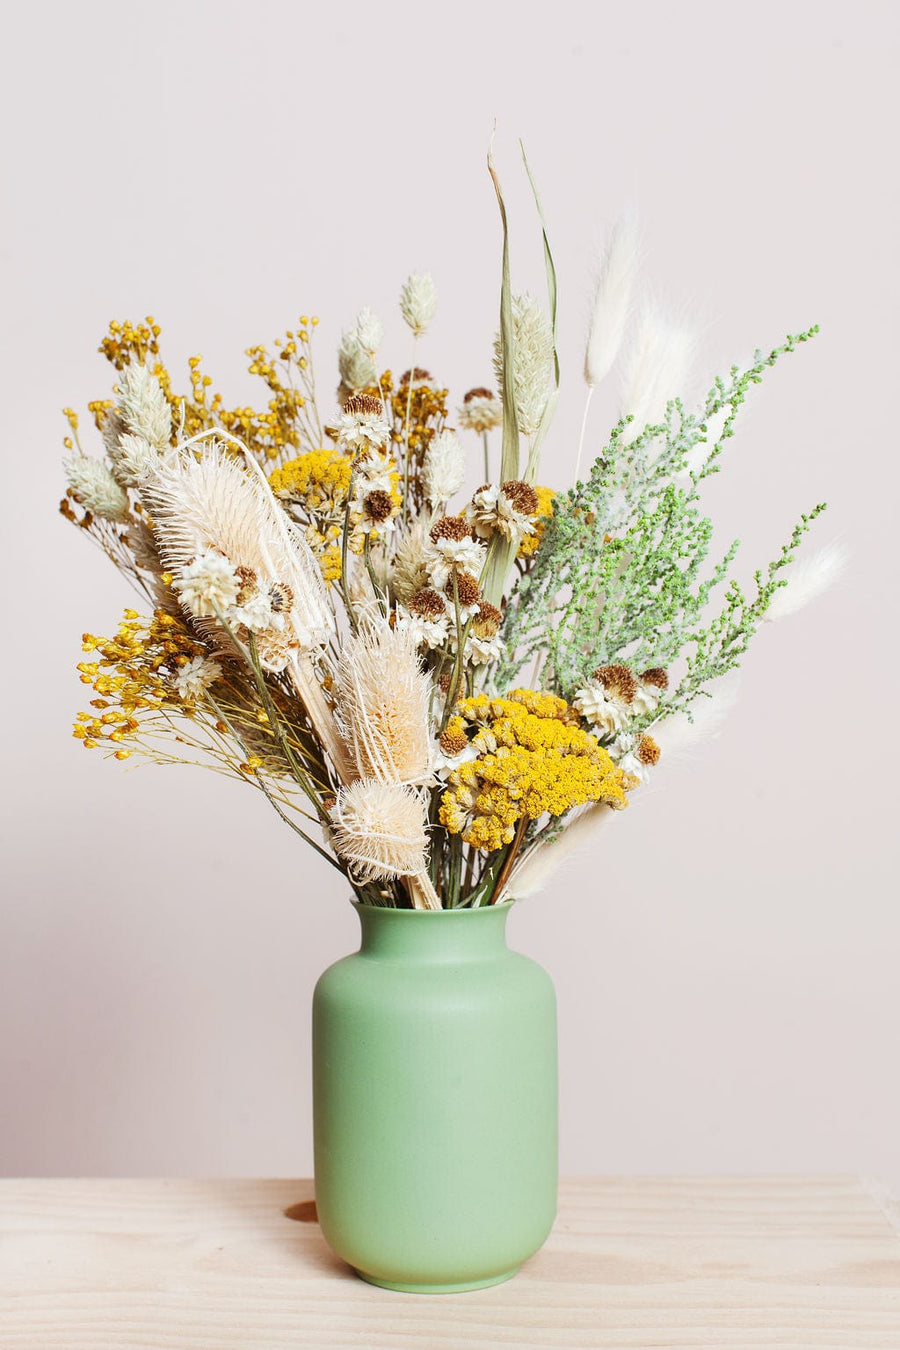 Idlewild Floral Co. Bouquets Citrine Petit Bouquet with Vase